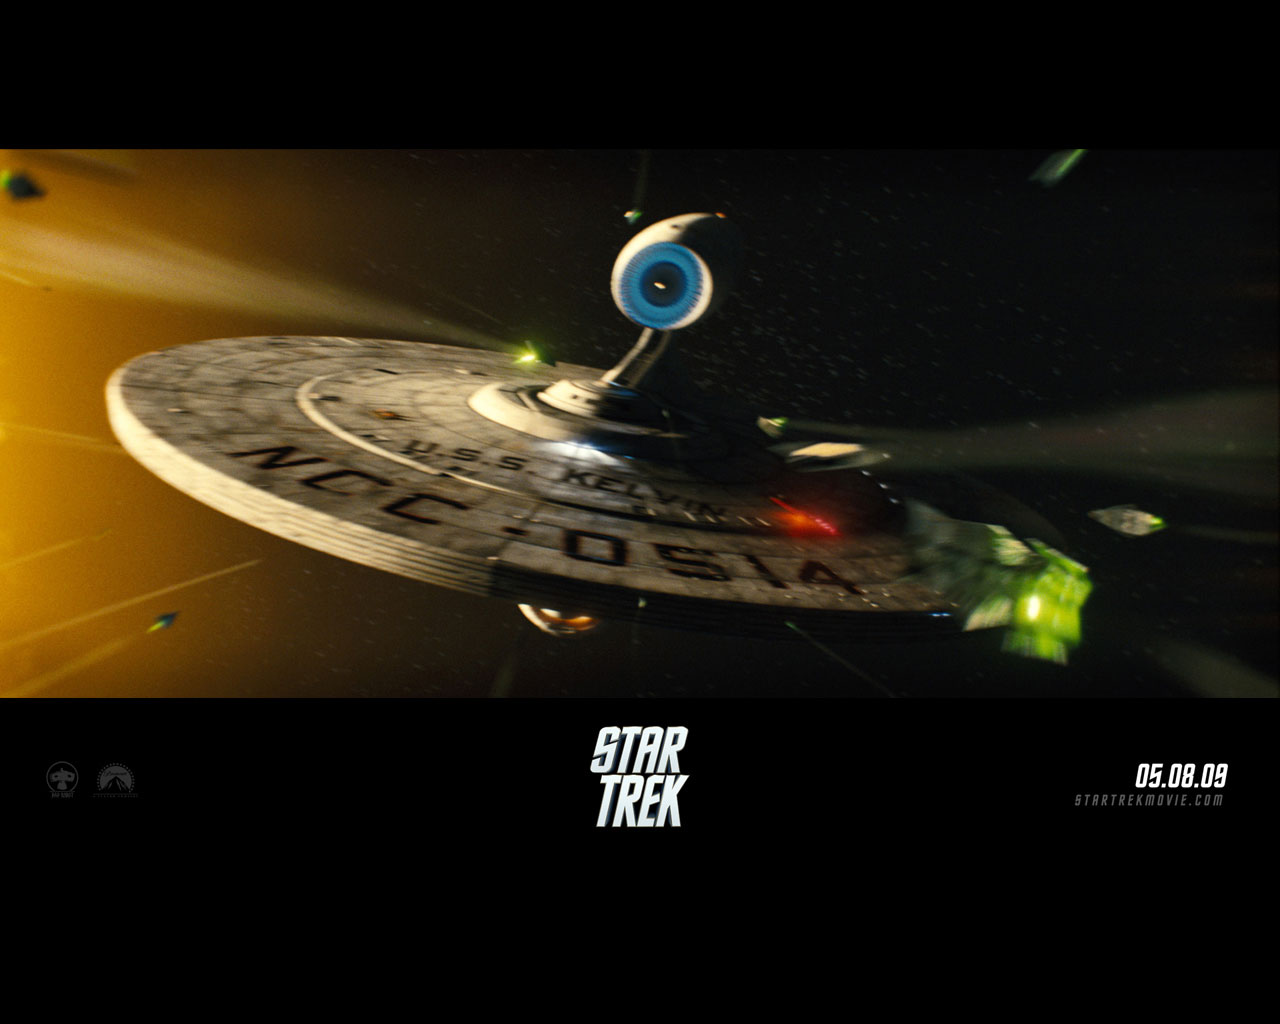 Star Trek Wallpaper De Films Galeria